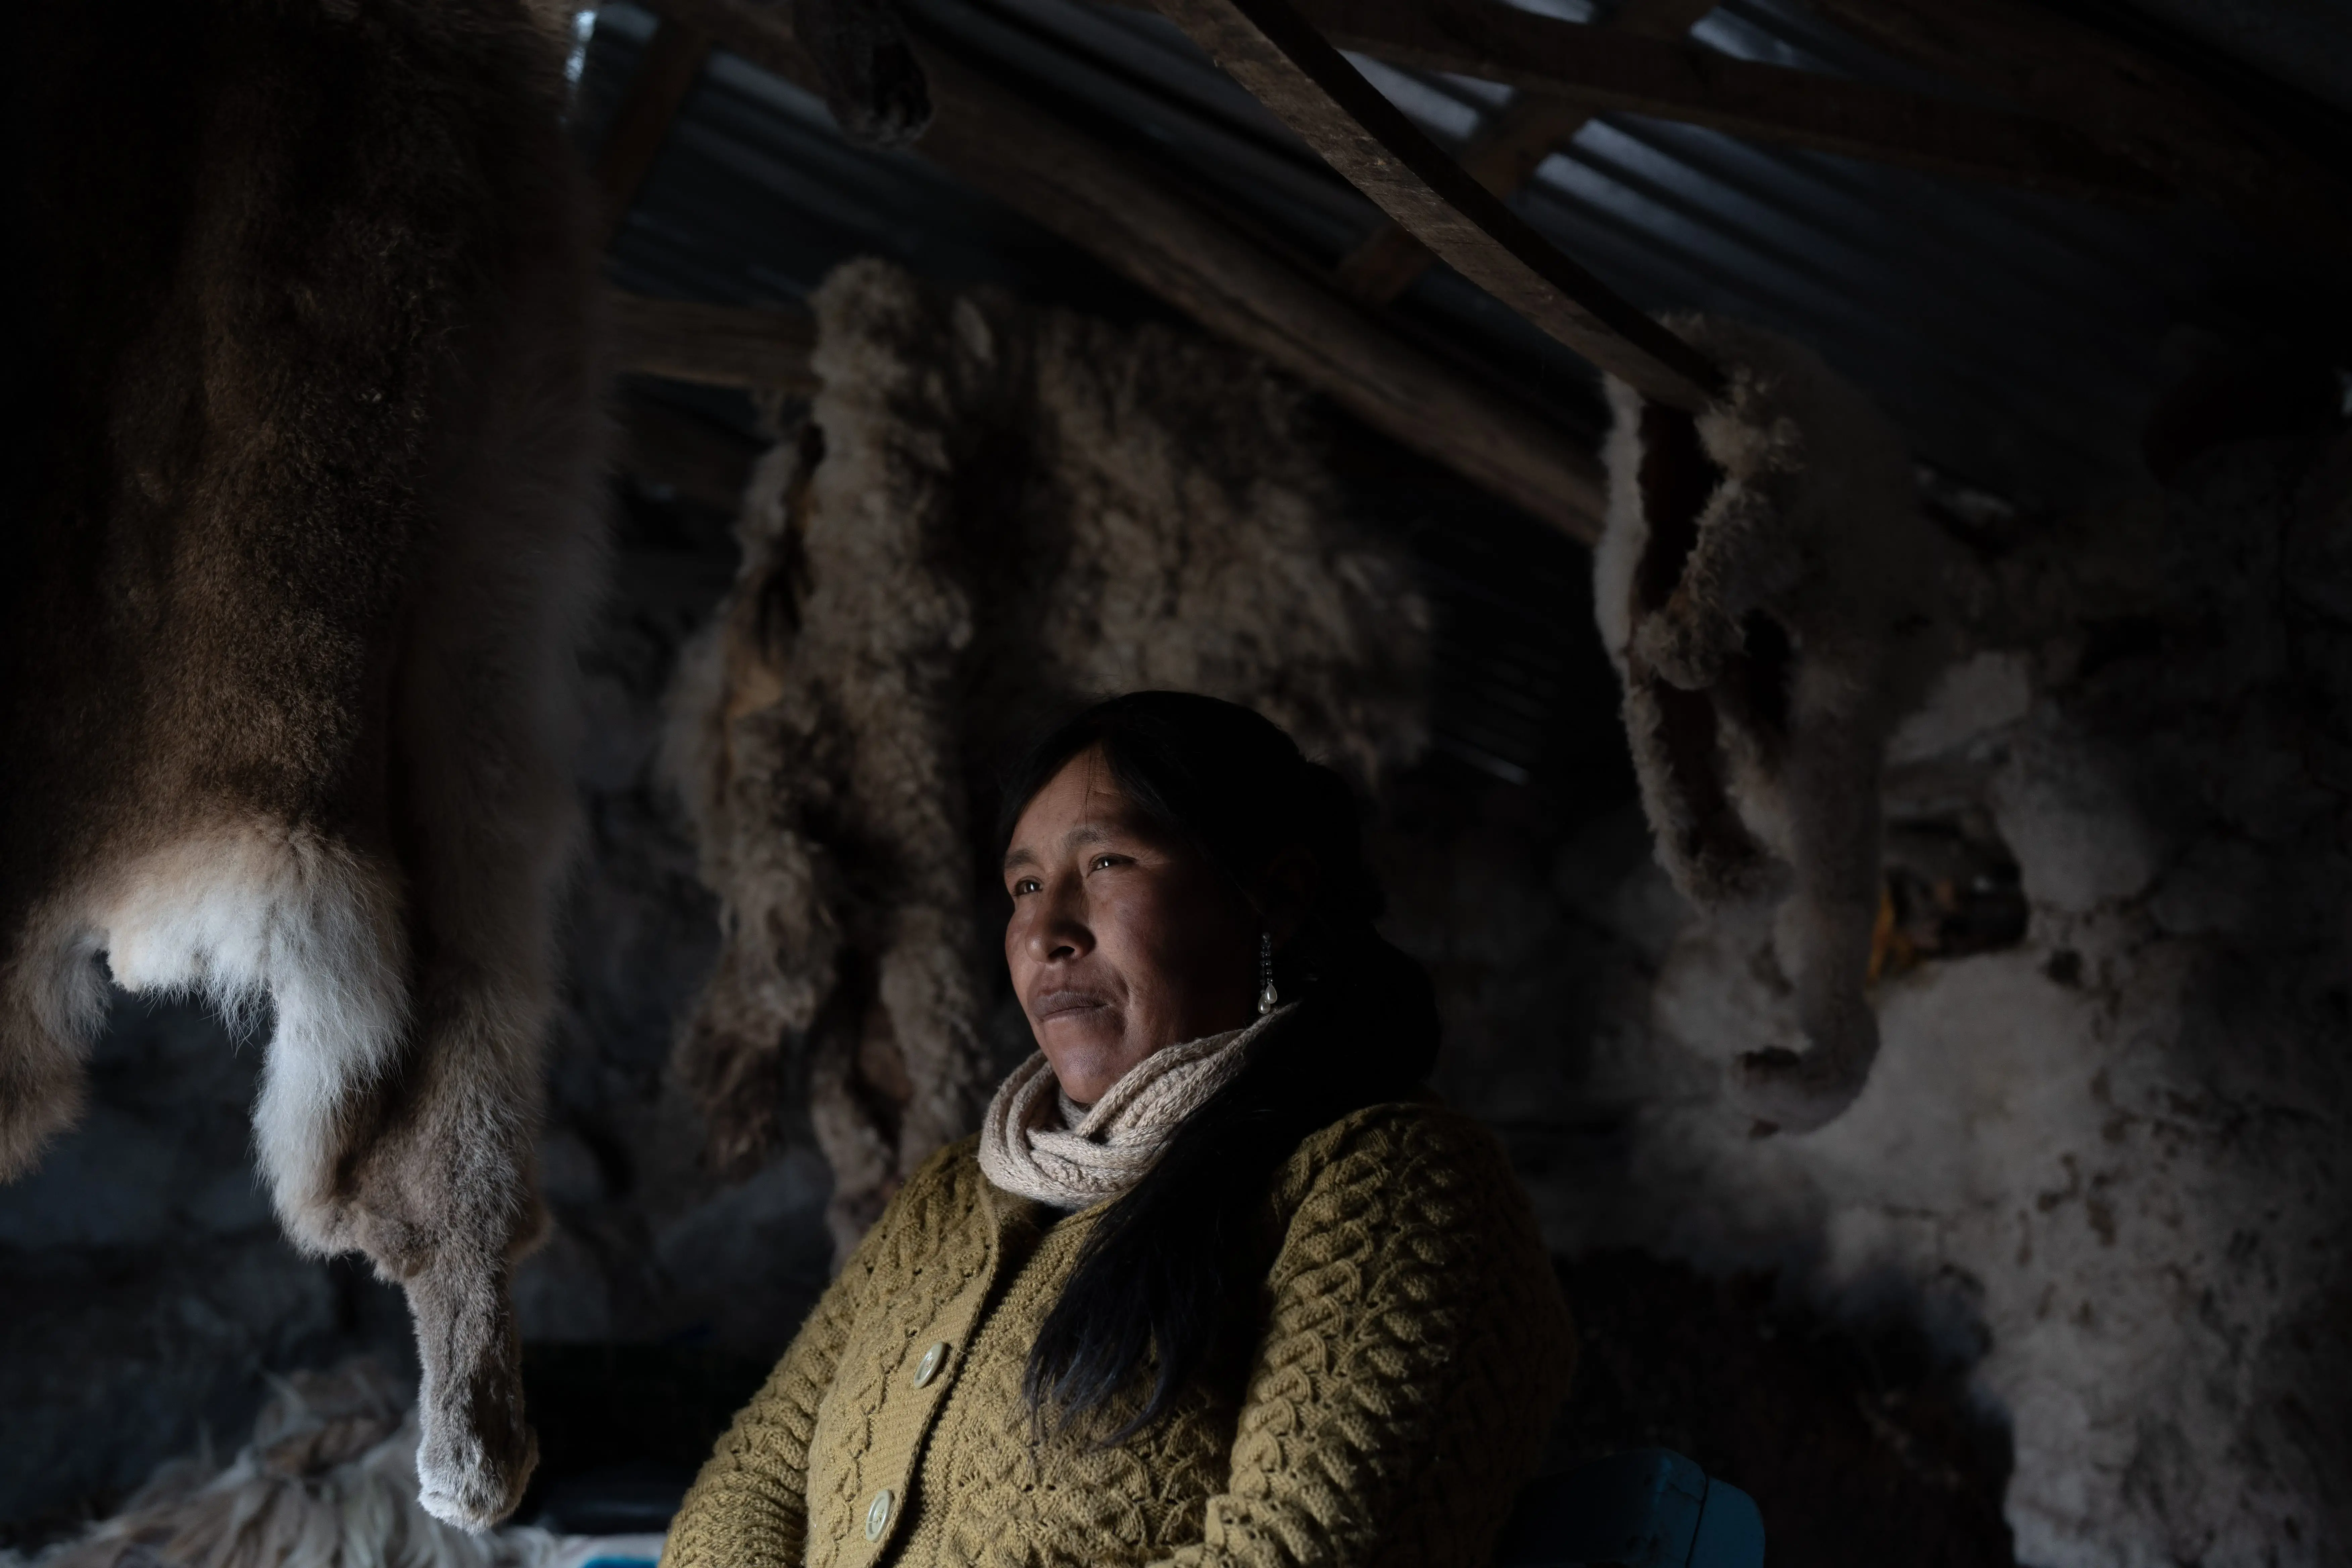 Yolanda Quispe, 41, park ranger of the Quelccaya glacier